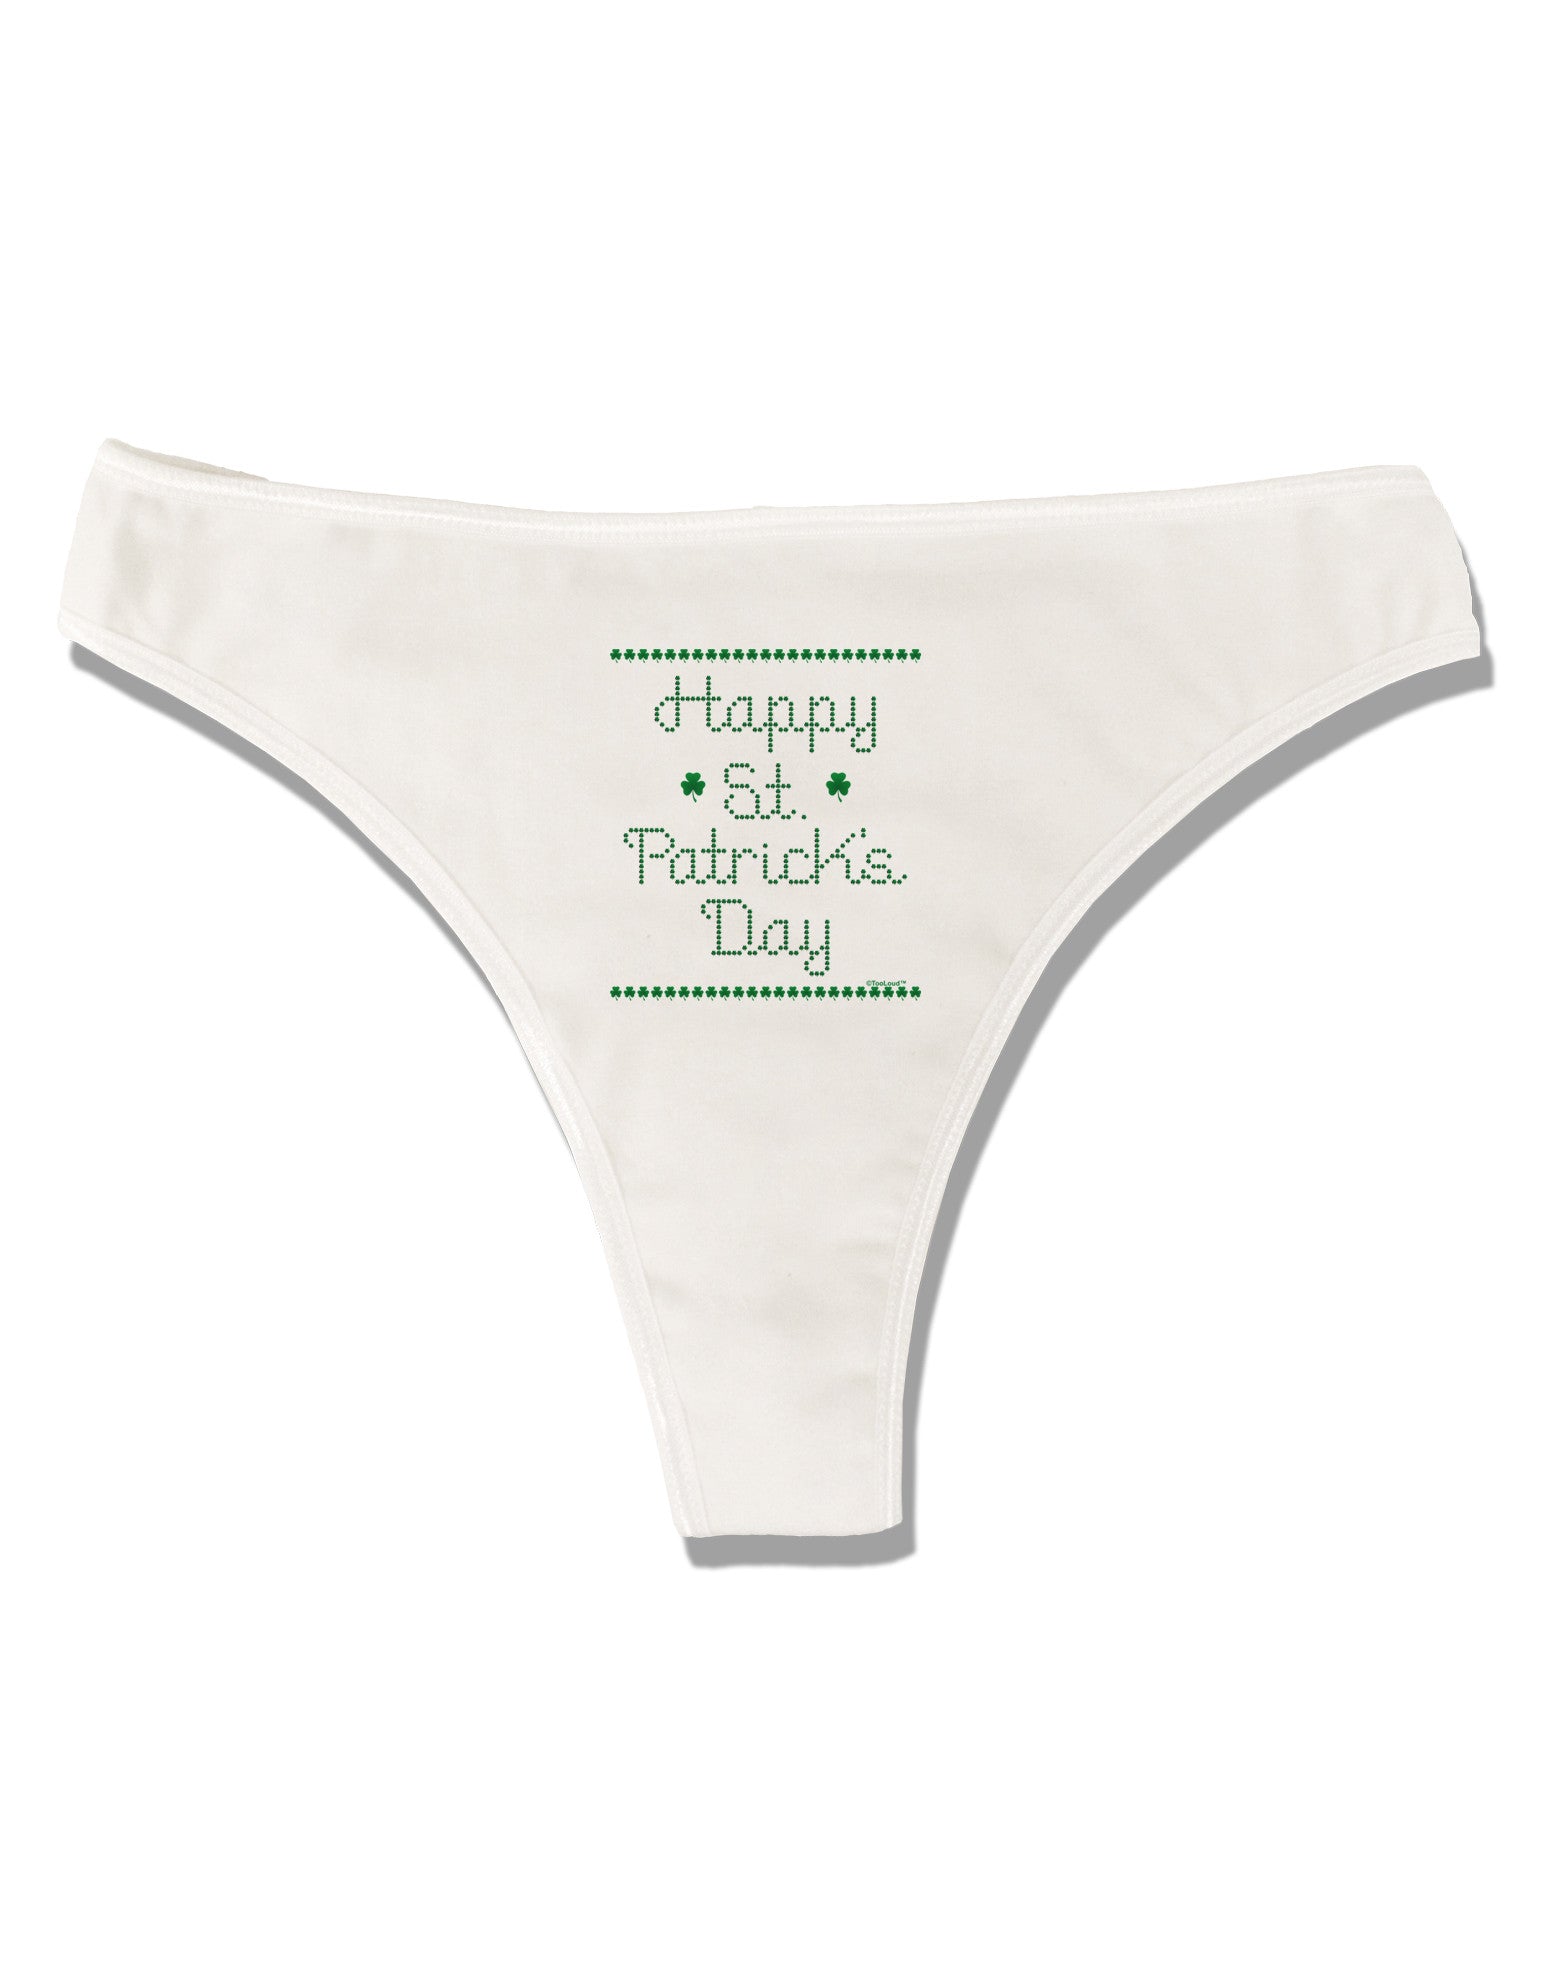 Lucky St Patricks Day Panties